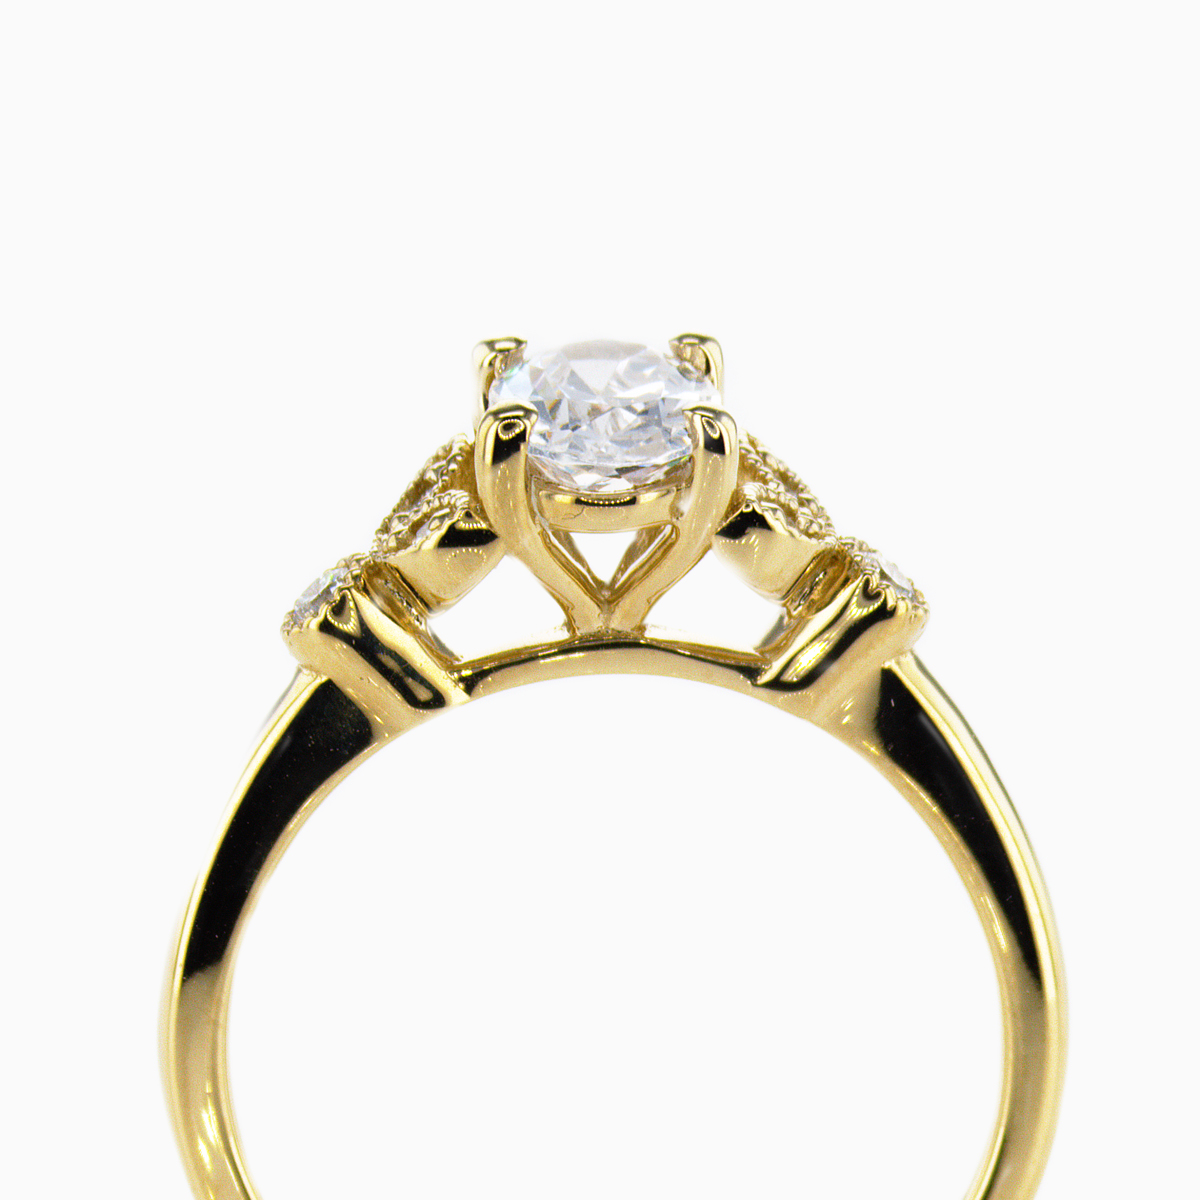 Vintage leaf motif Diamond Engagement Ring, 14k Yellow Gold